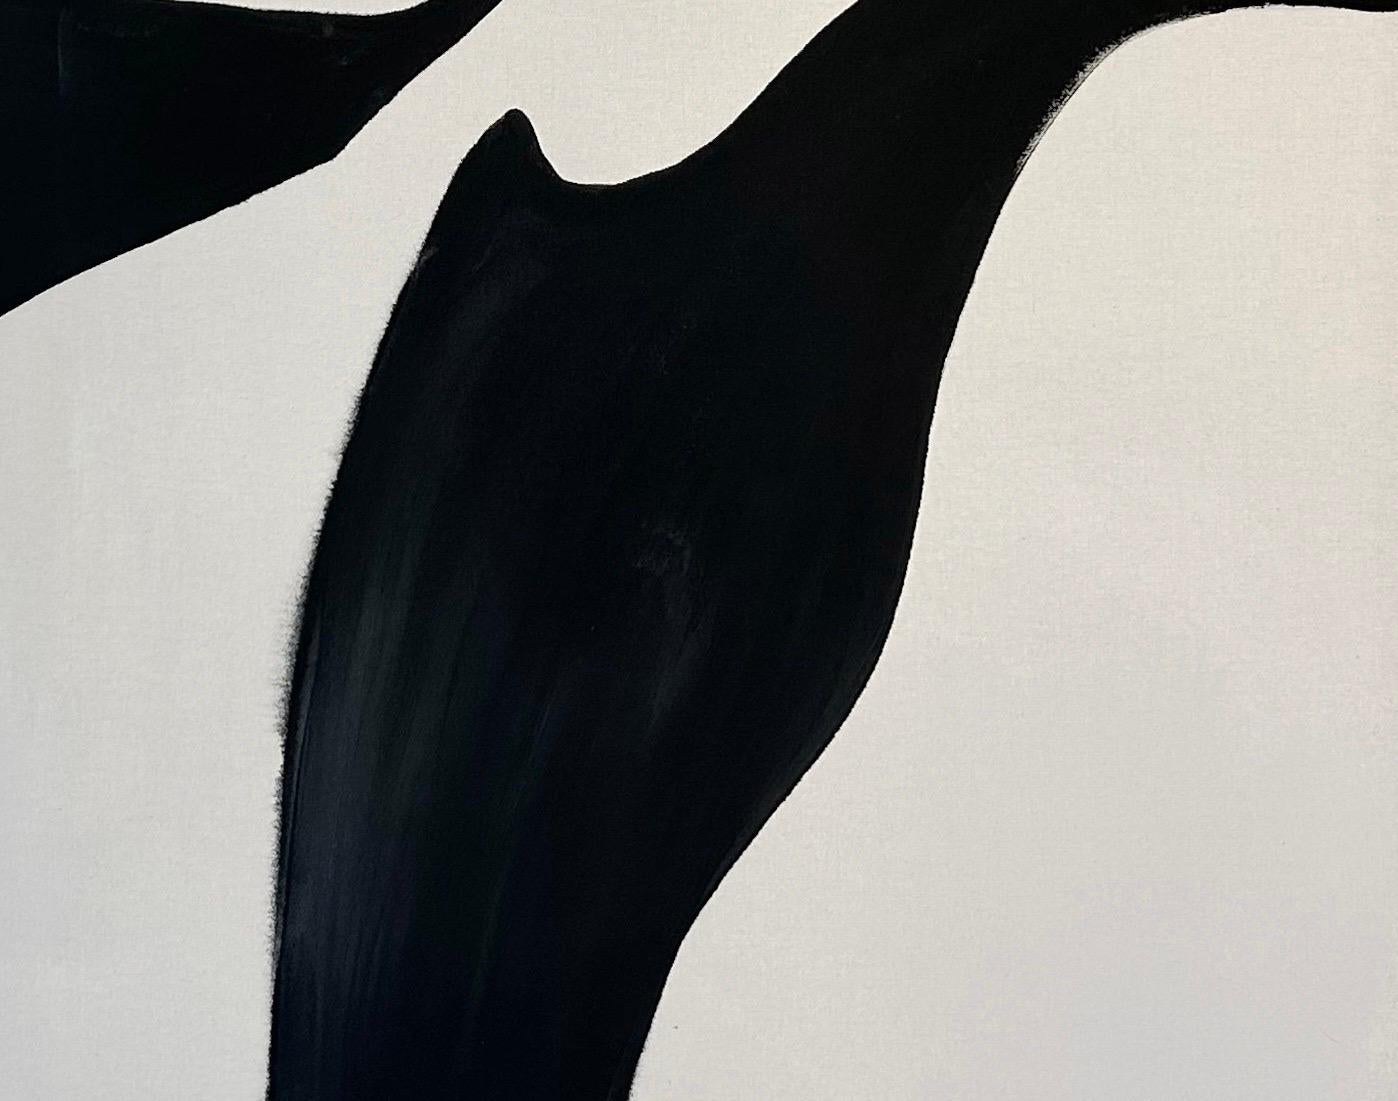 ABSTRACT Kunstwerk in Schwarz und Weiß ohne Titel der spanischen Künstlerin Alicia Gimeno – Painting von AGR